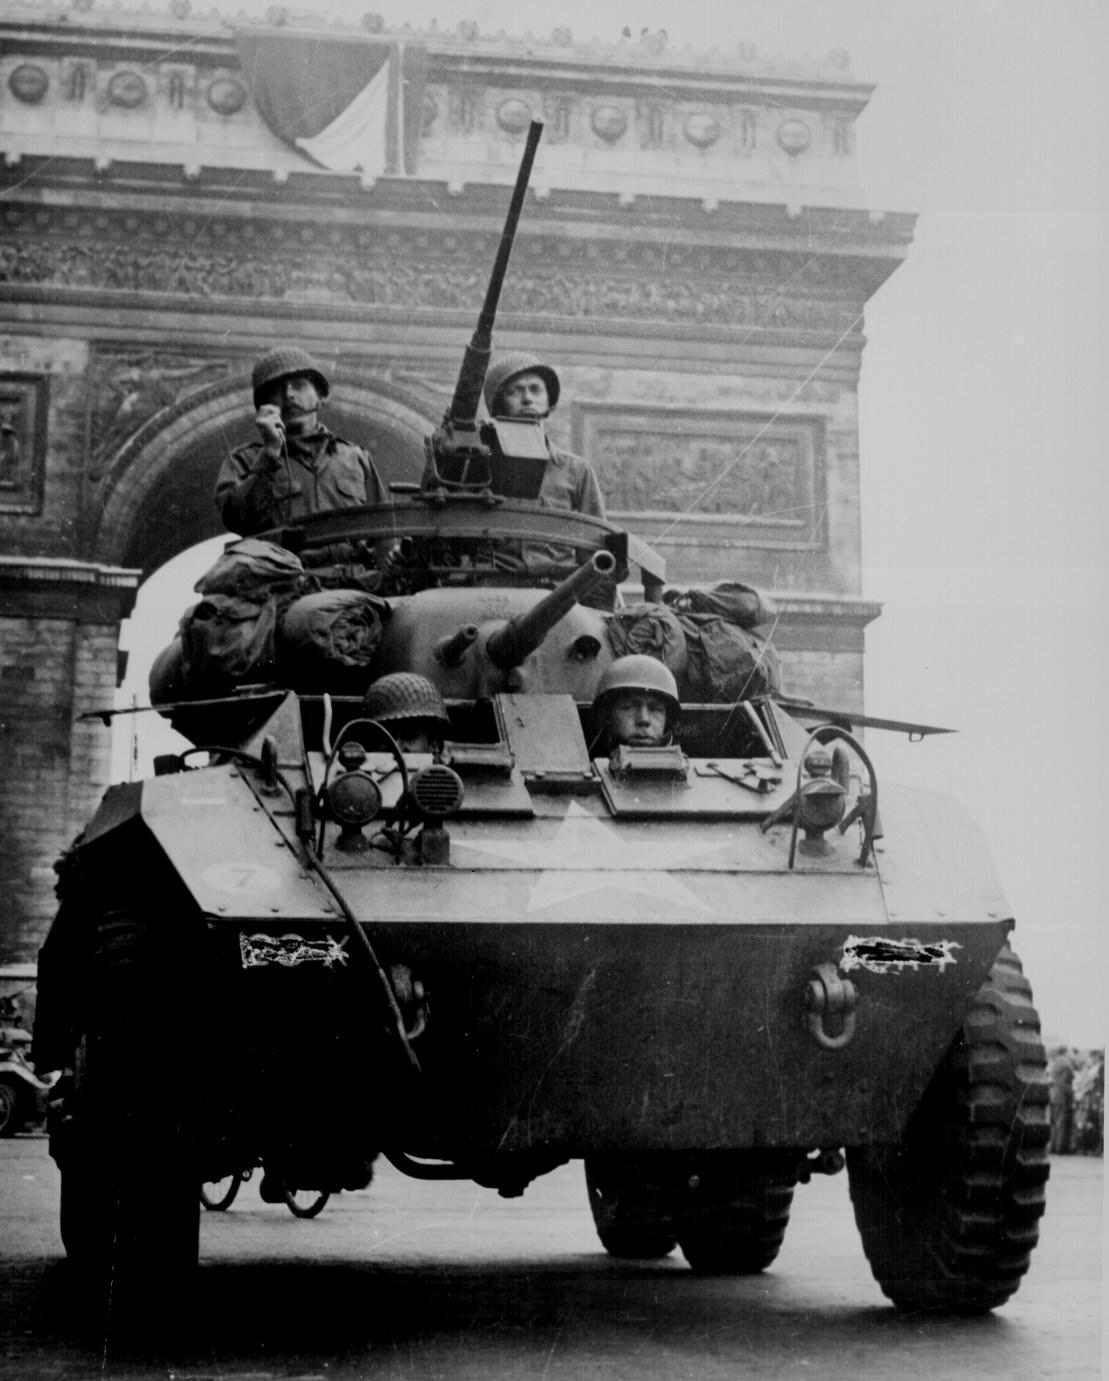 La libération de Paris, 1944